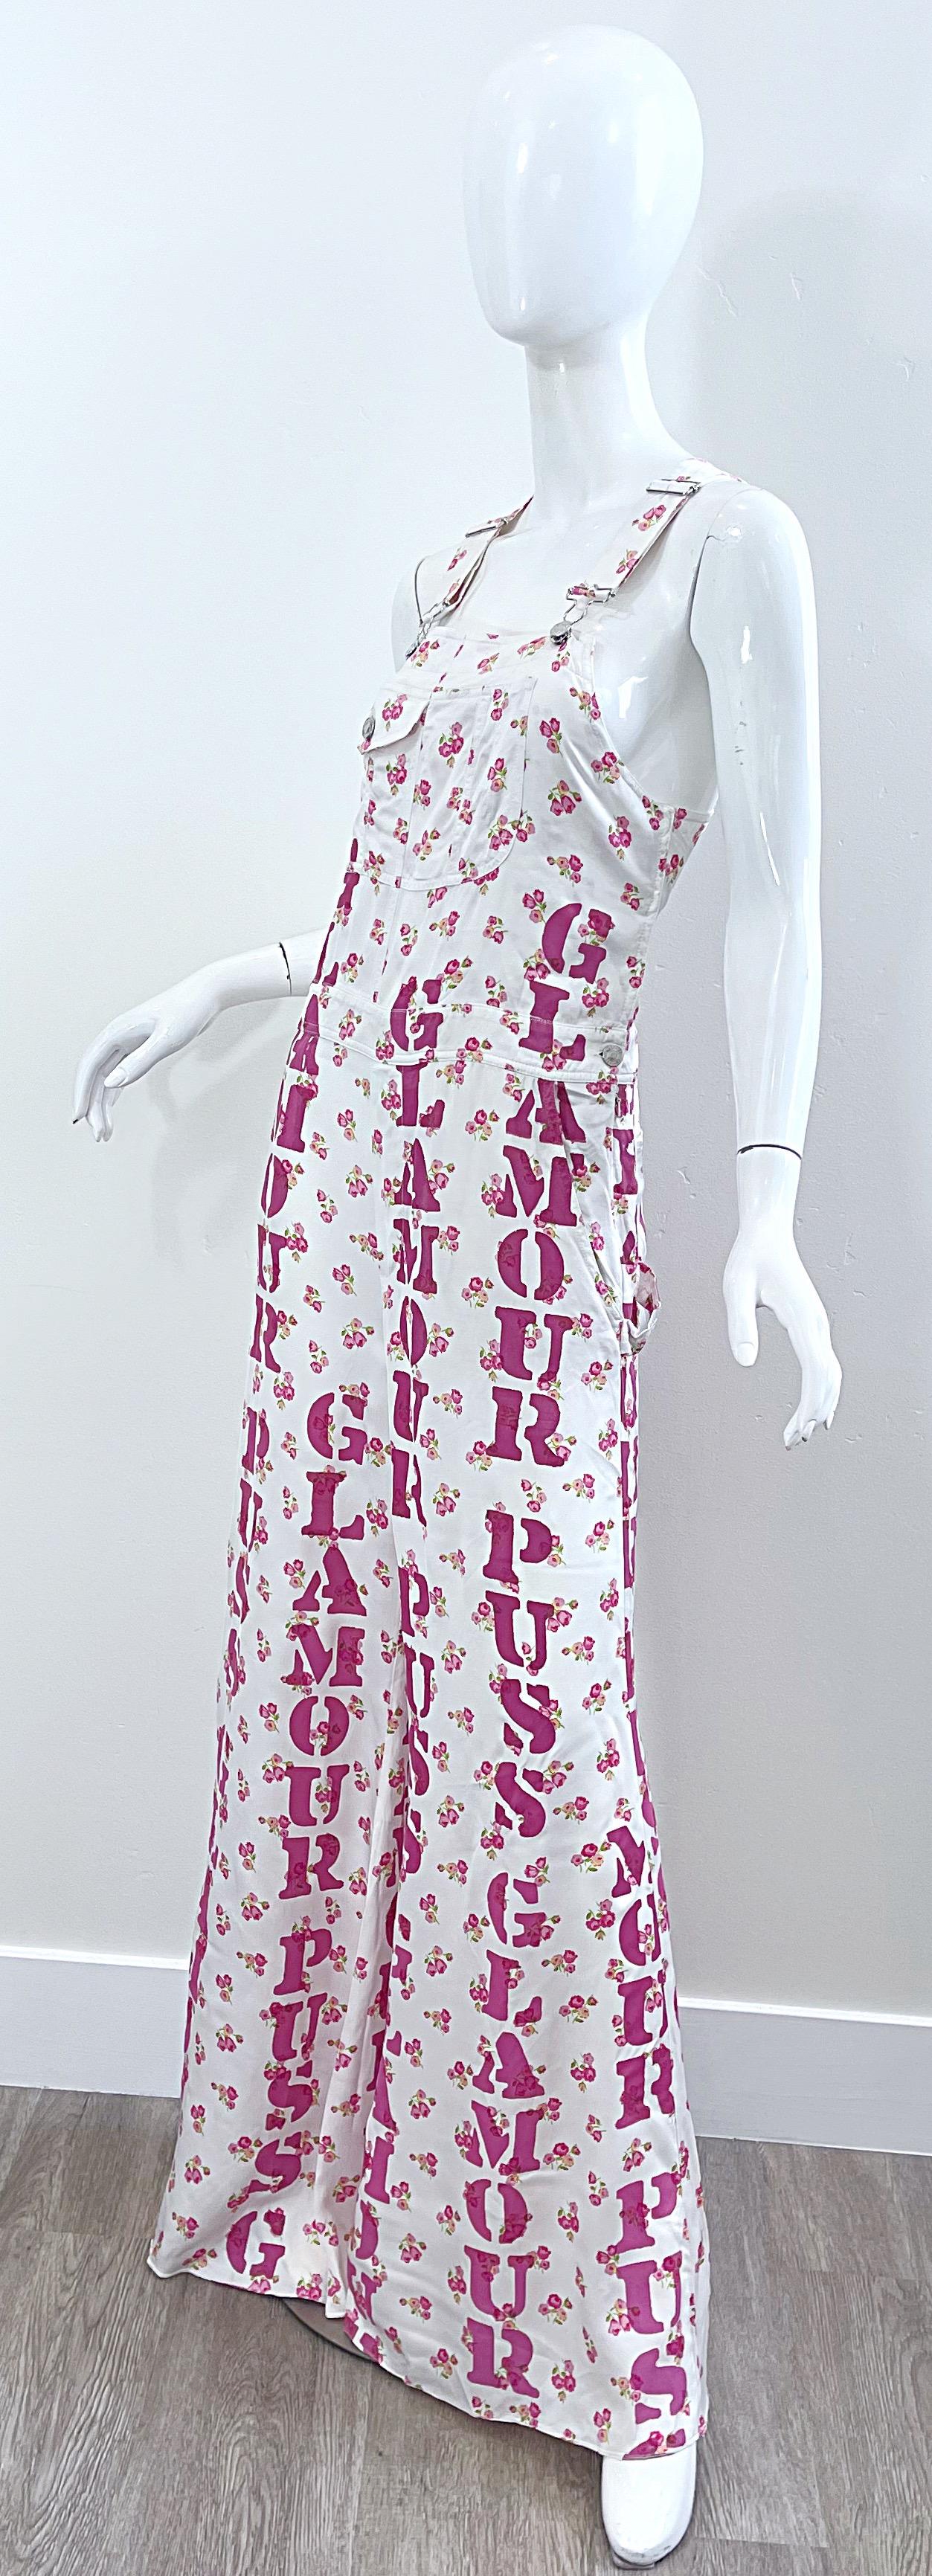 Moschino Couture Resort 2020 Größe 8 Glamour Puss Overalls mit Blumendruck in Übergröße 3